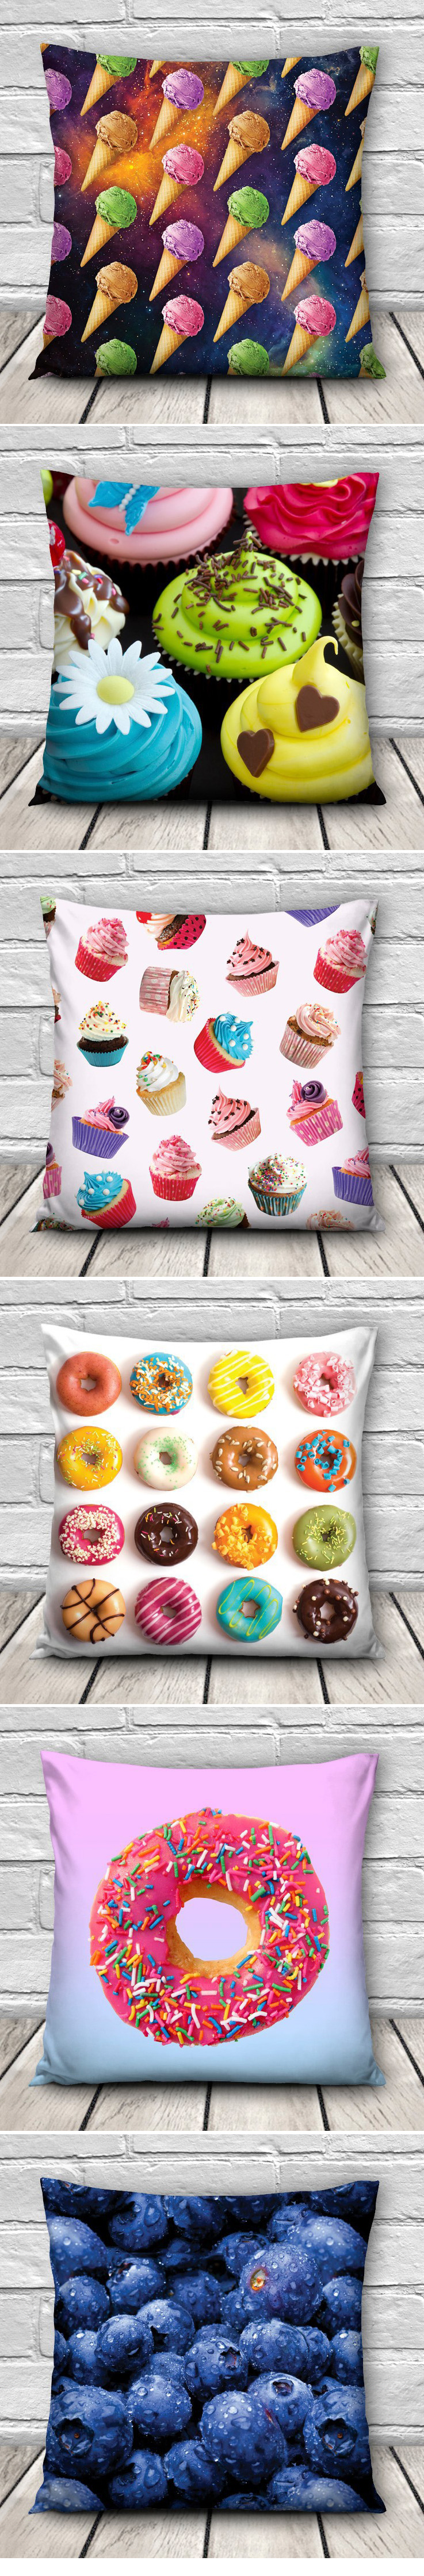 3D-Sweet-Food-Patterns-Throw-Pillow-Case-Home-Sofa-Car-Waist-Cushion-Cover-1022681